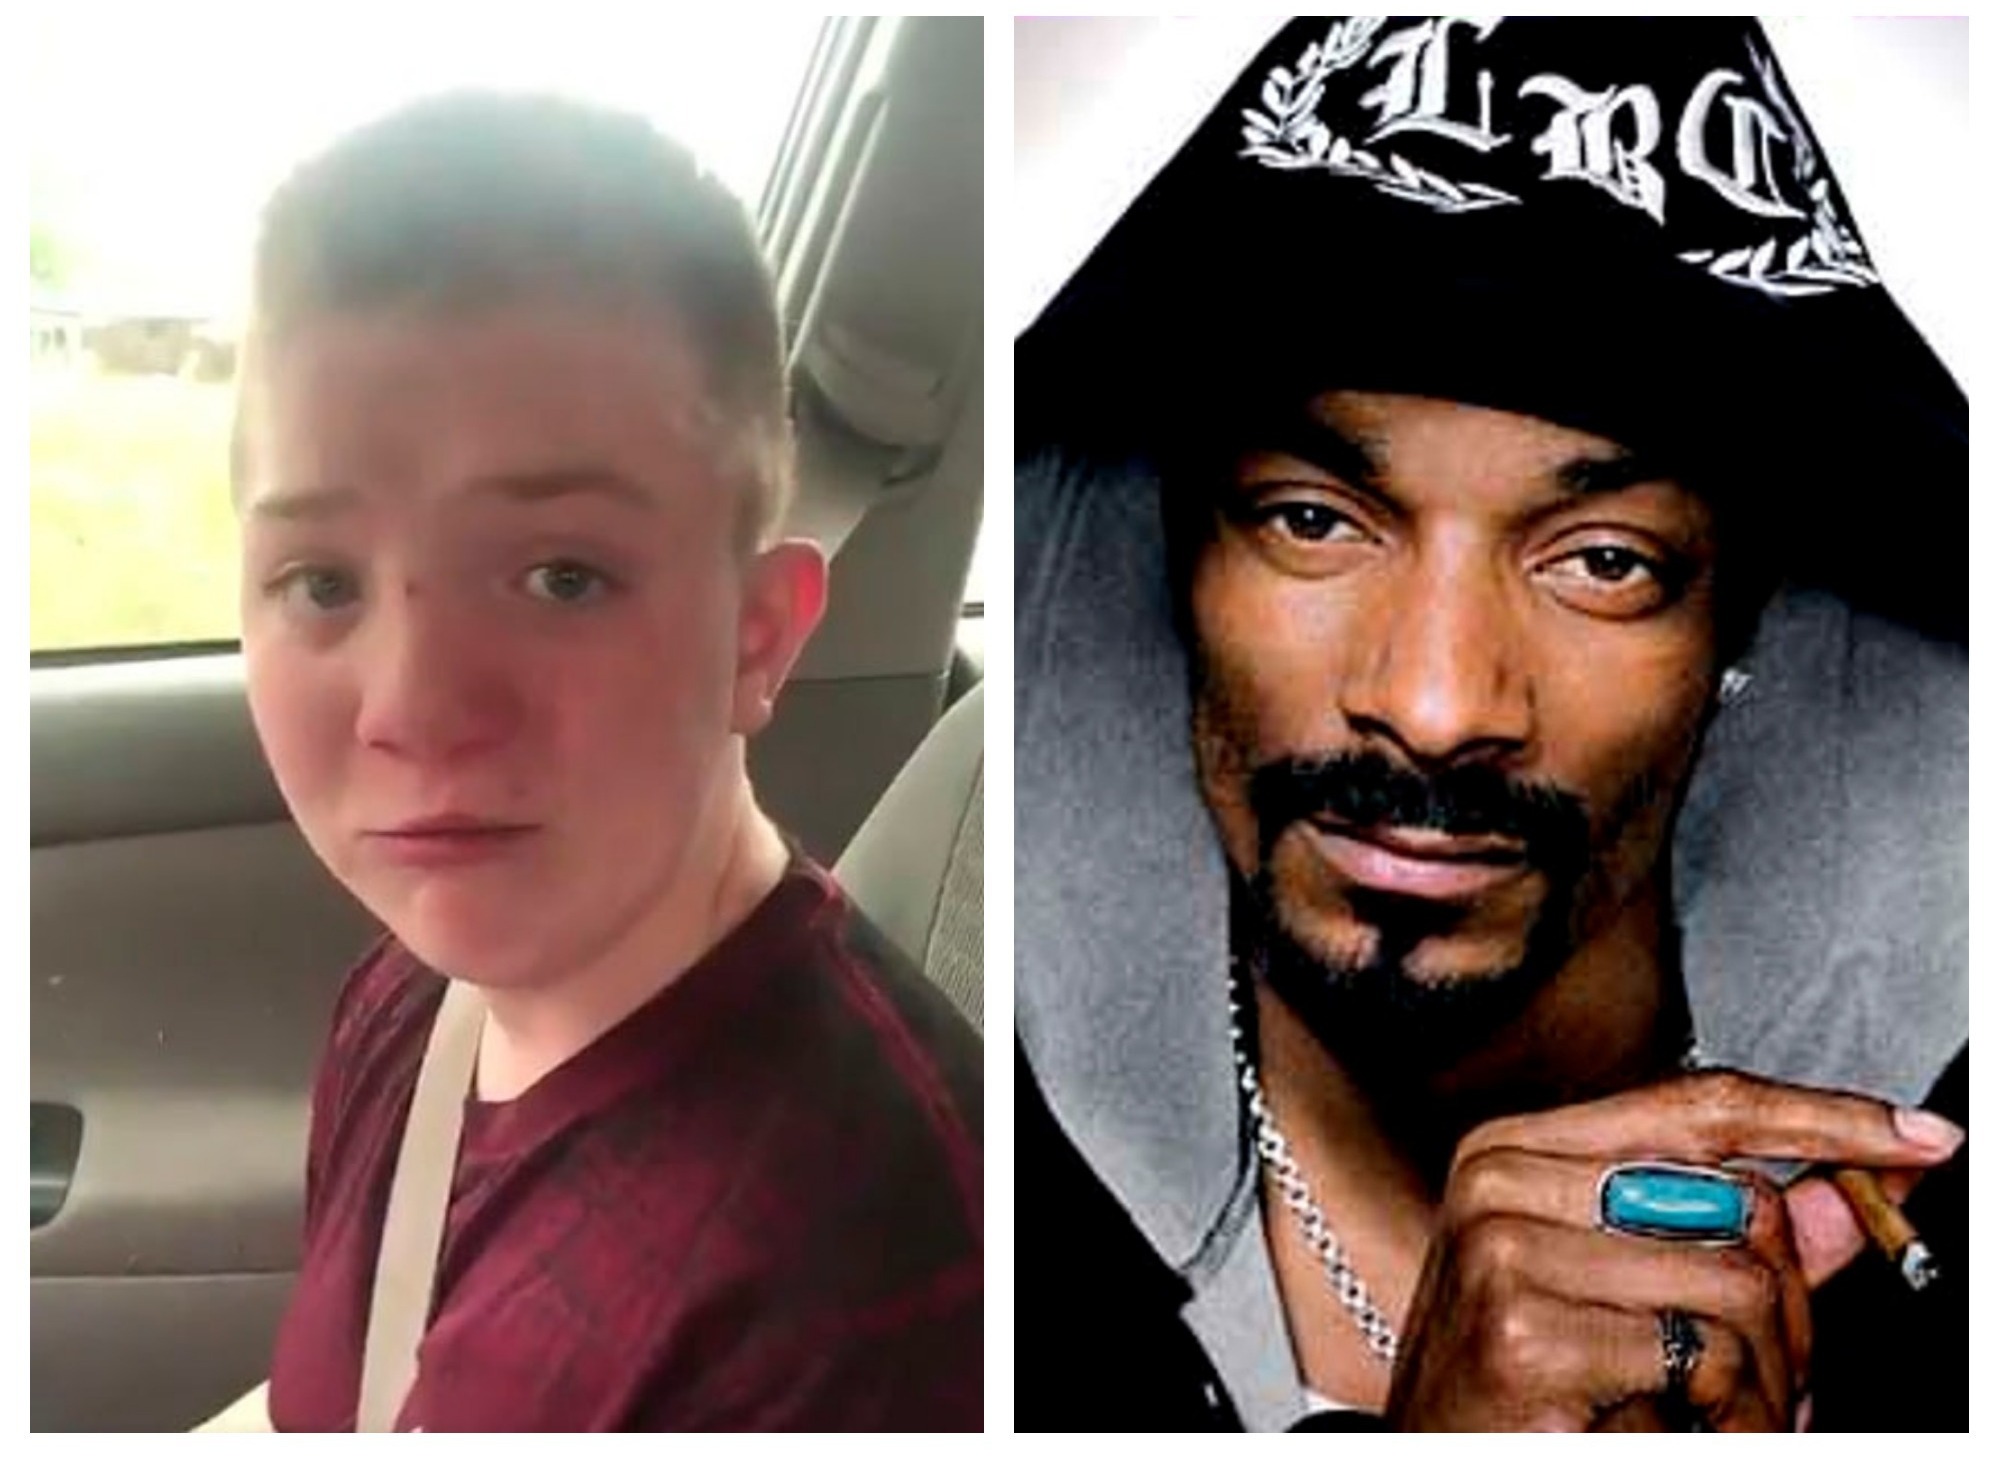 Snoop Dogg, Джастин Бибер и другие звезды поддержали подростка, пожаловавшегося на травлю в школе – ФОТО – ВИДЕО